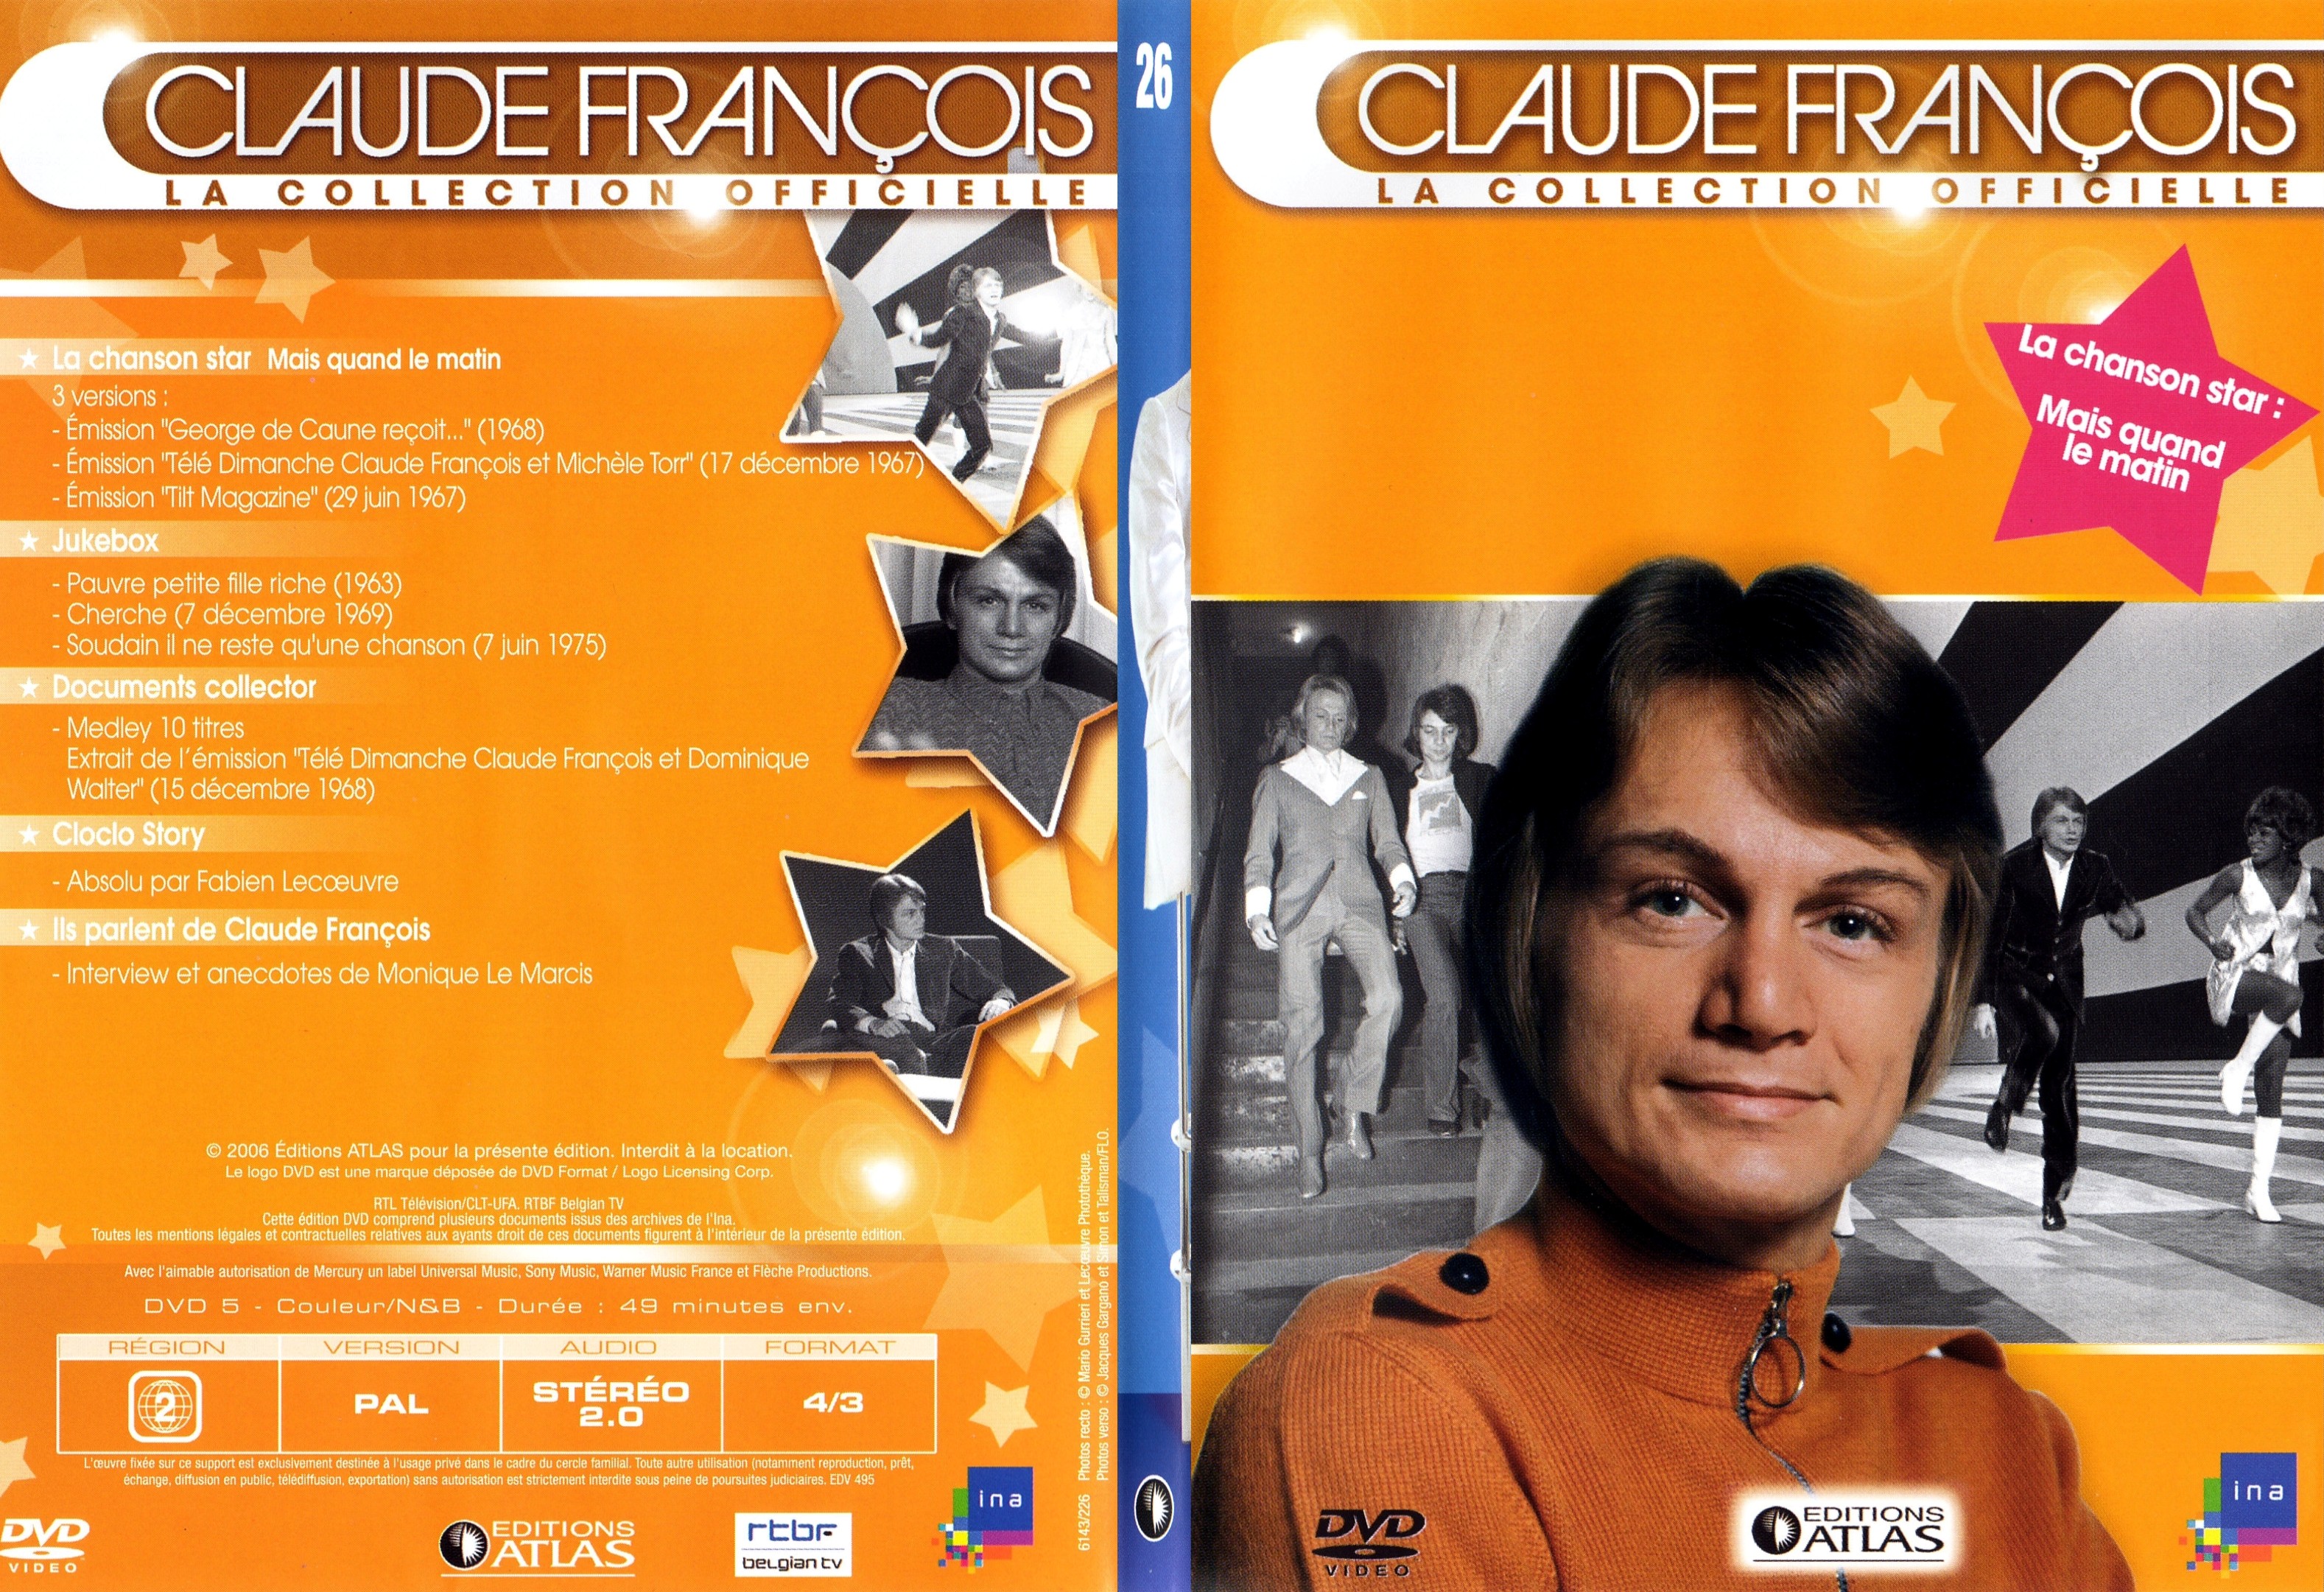 Jaquette DVD Claude francois le collection officielle vol 26 - SLIM